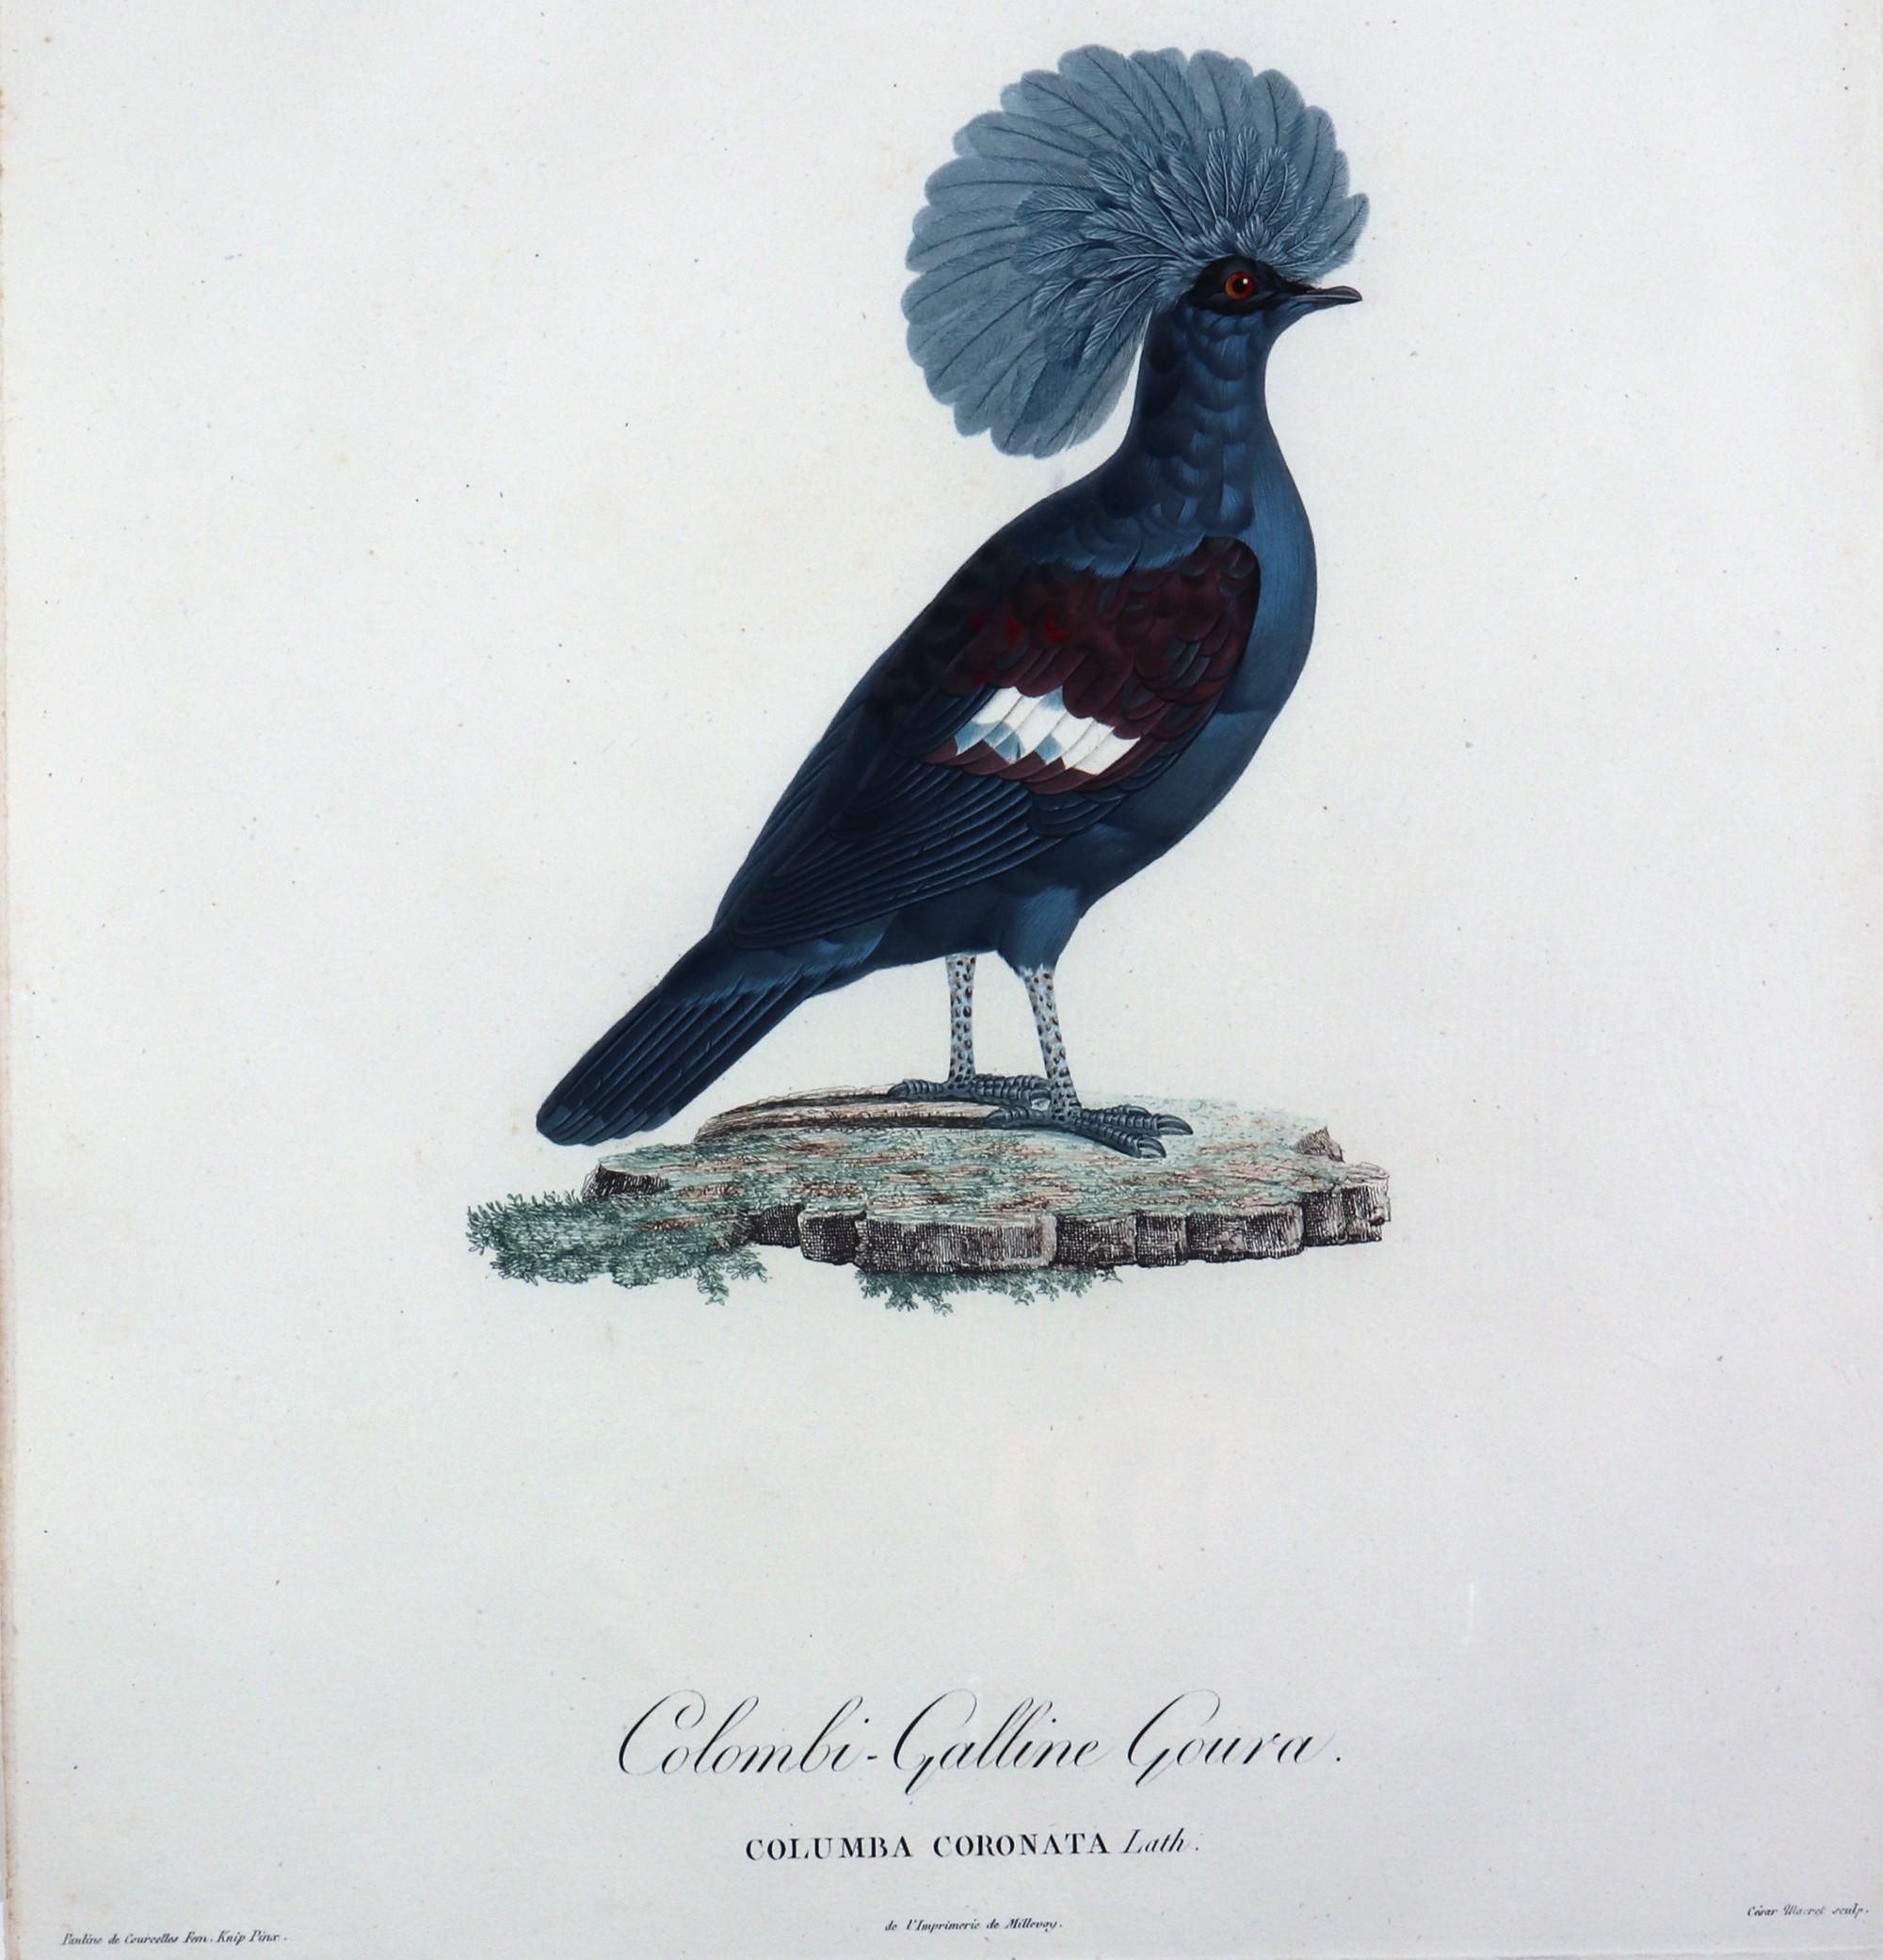 Français Gravure d'un pigeon par Madame Pauline Knipp, Colombi-Galline Goura en vente